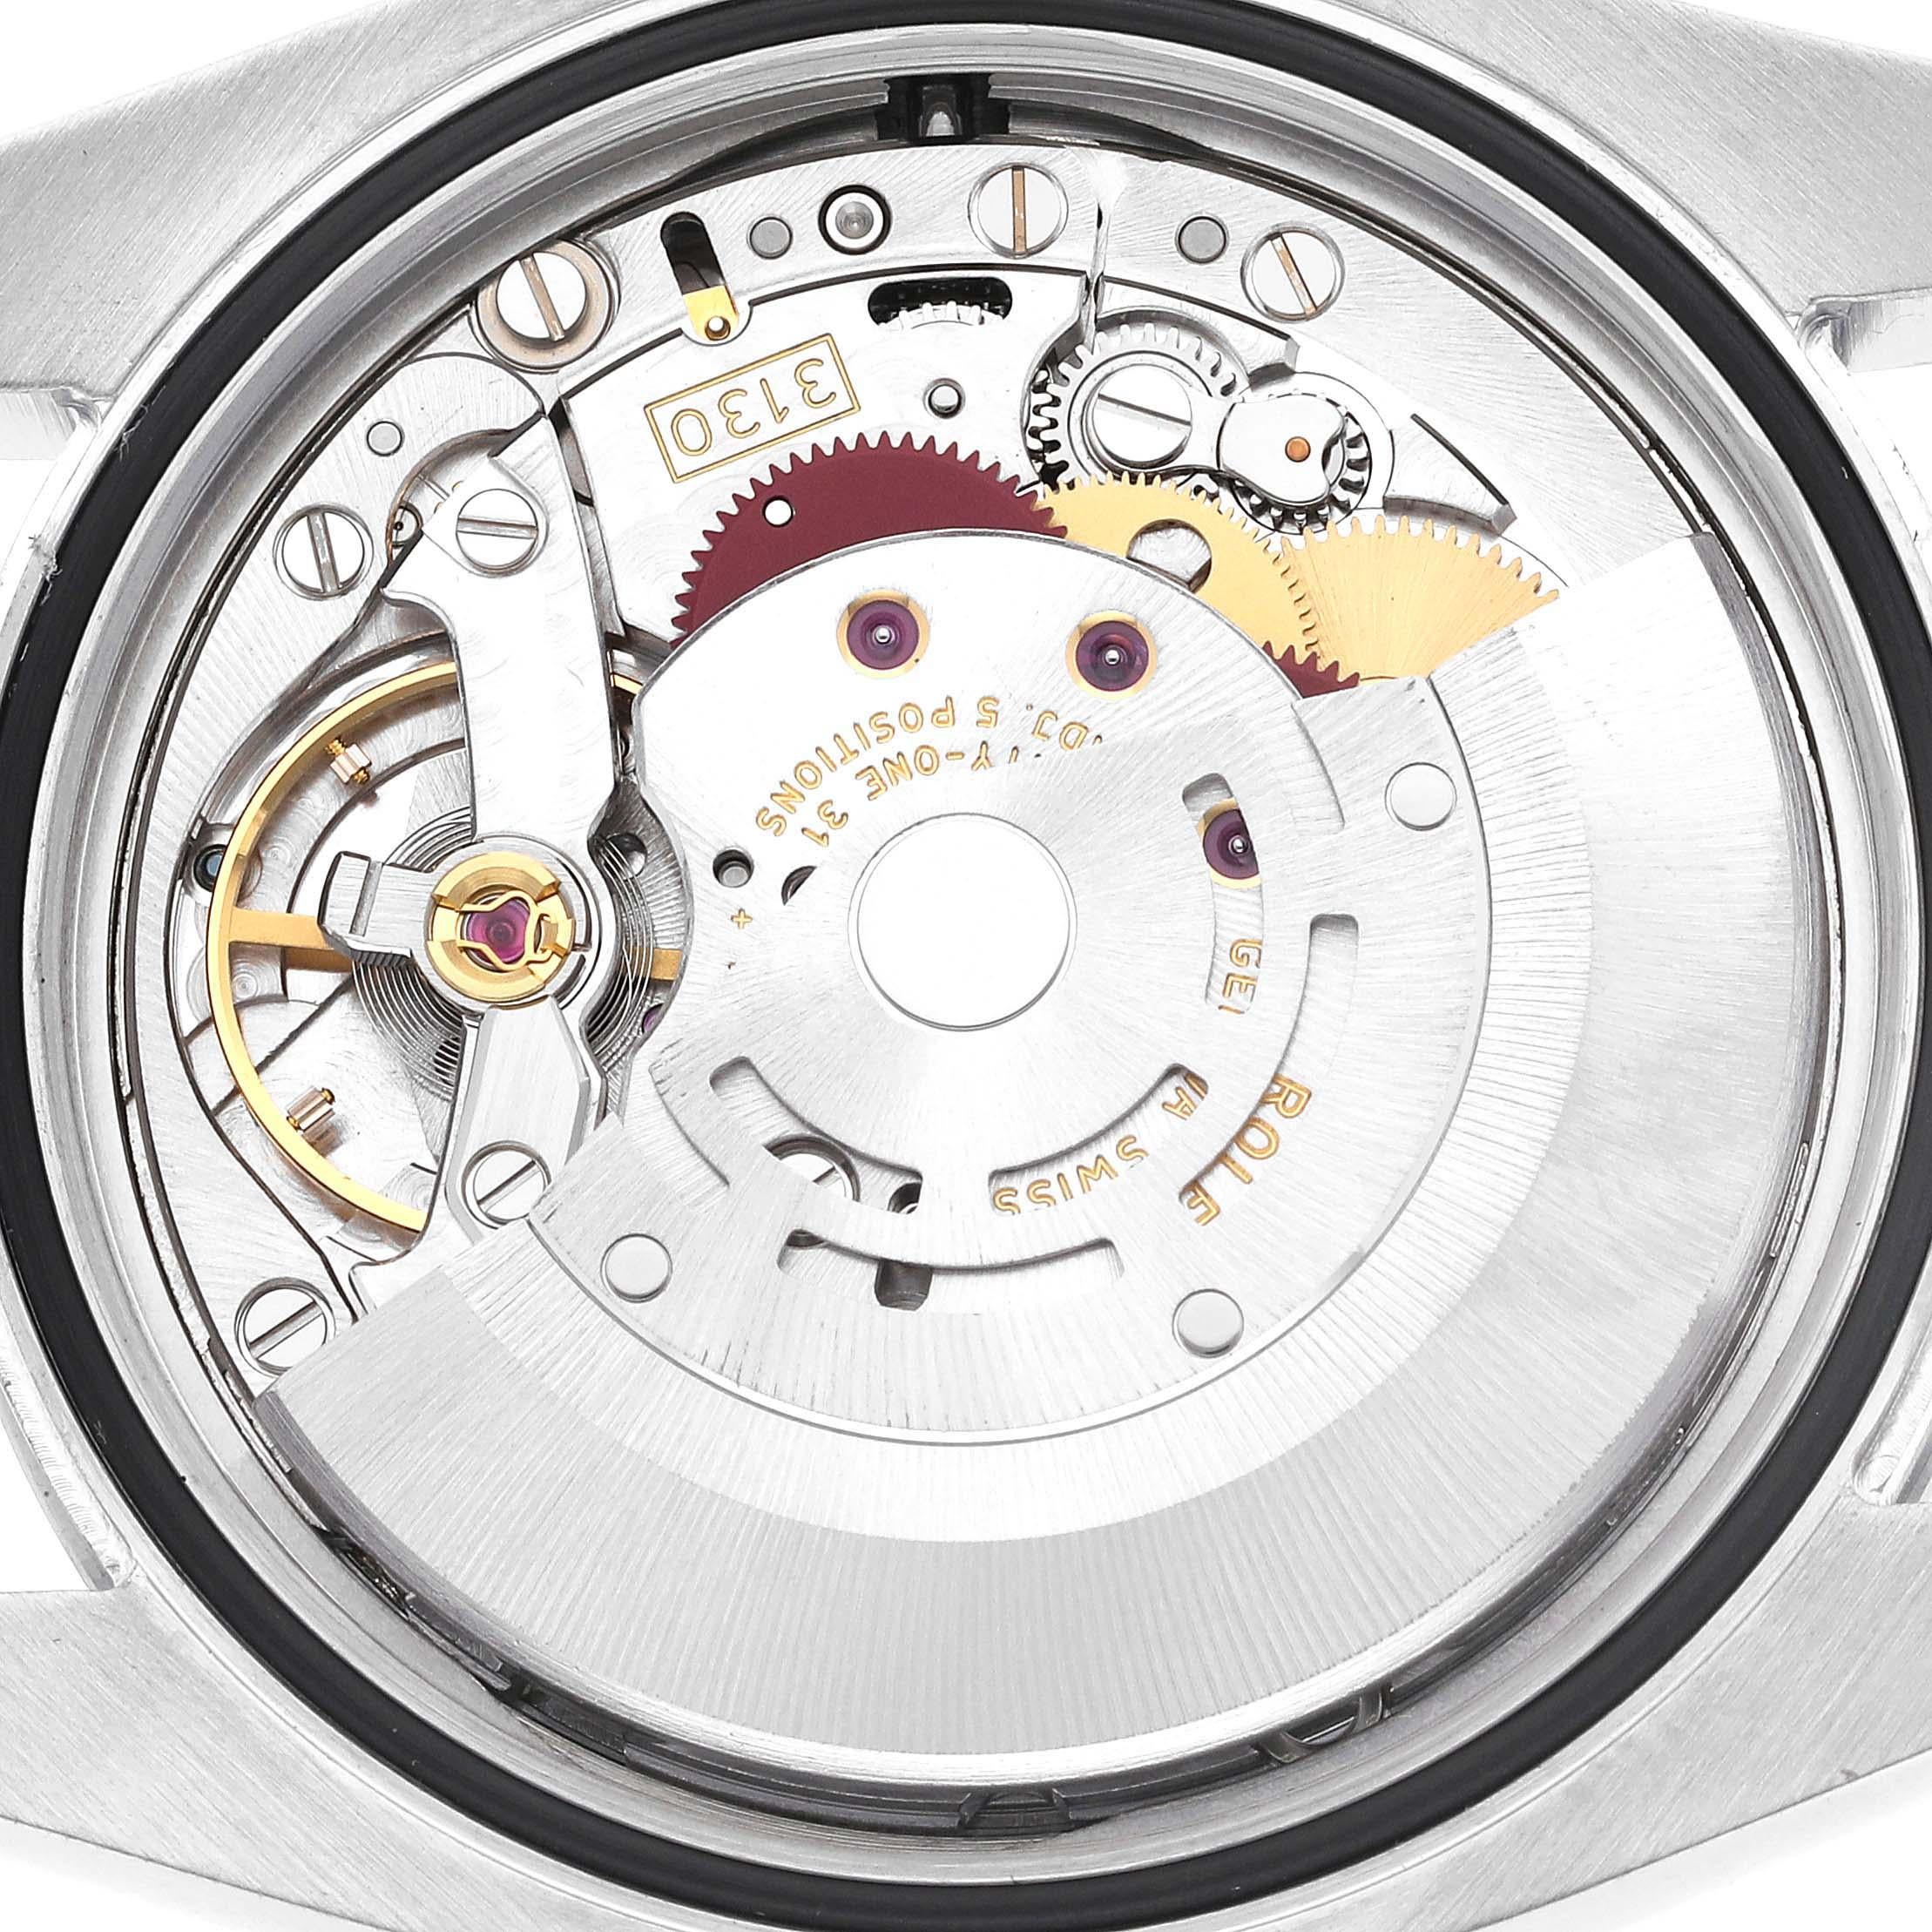 Rolex Oyster Perpetual 36mm avec cadran concentrique argenté pour hommes 116000 5